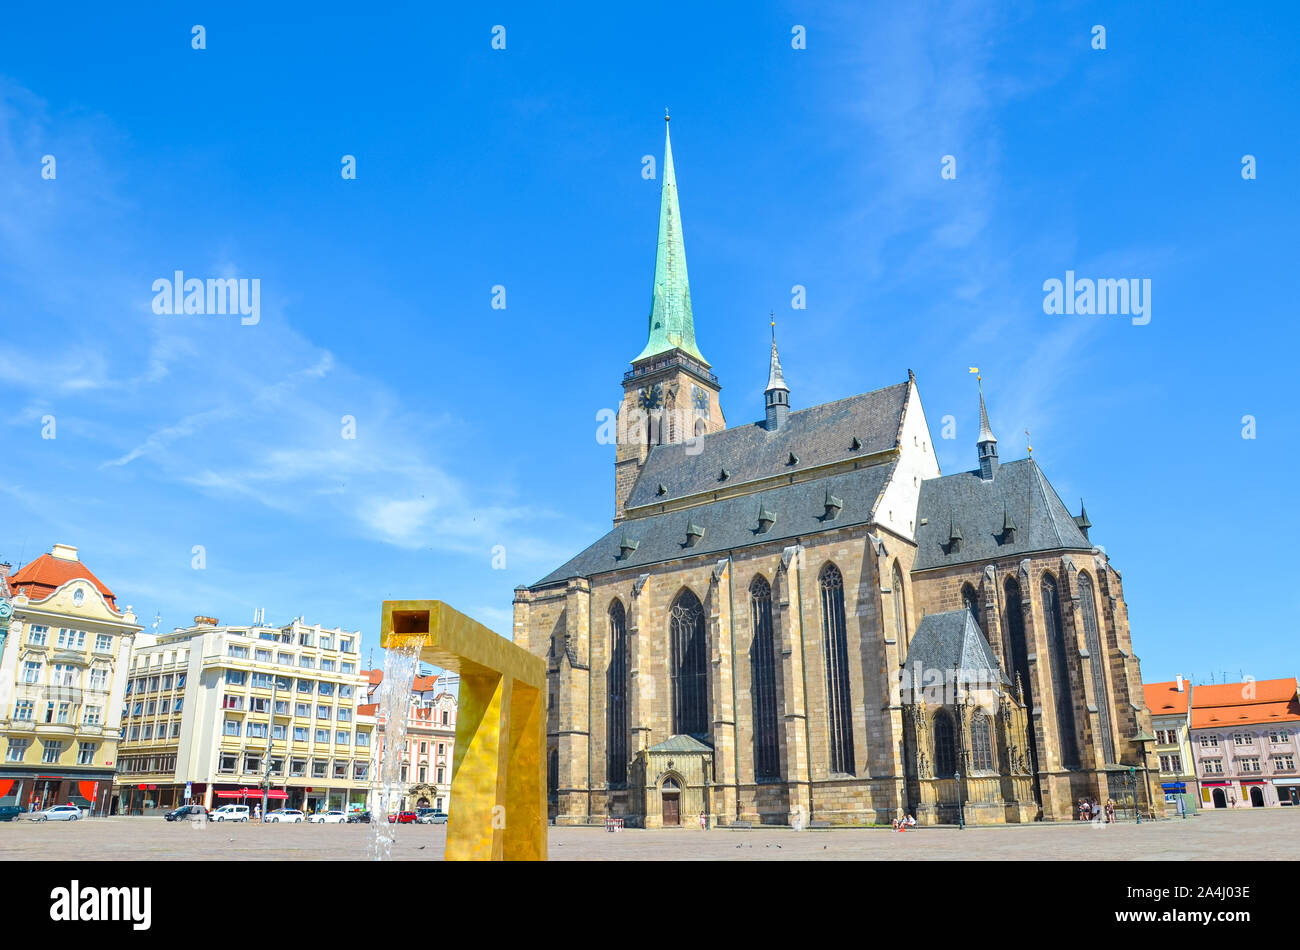 La place principale de Pilsen, République tchèque avec la cathédrale Saint-Barthélemy dominante et golden fountain. Les bâtiments historiques dans le centre. Belle ville en Bohême, République tchèque célèbre pour sa brasserie. Banque D'Images